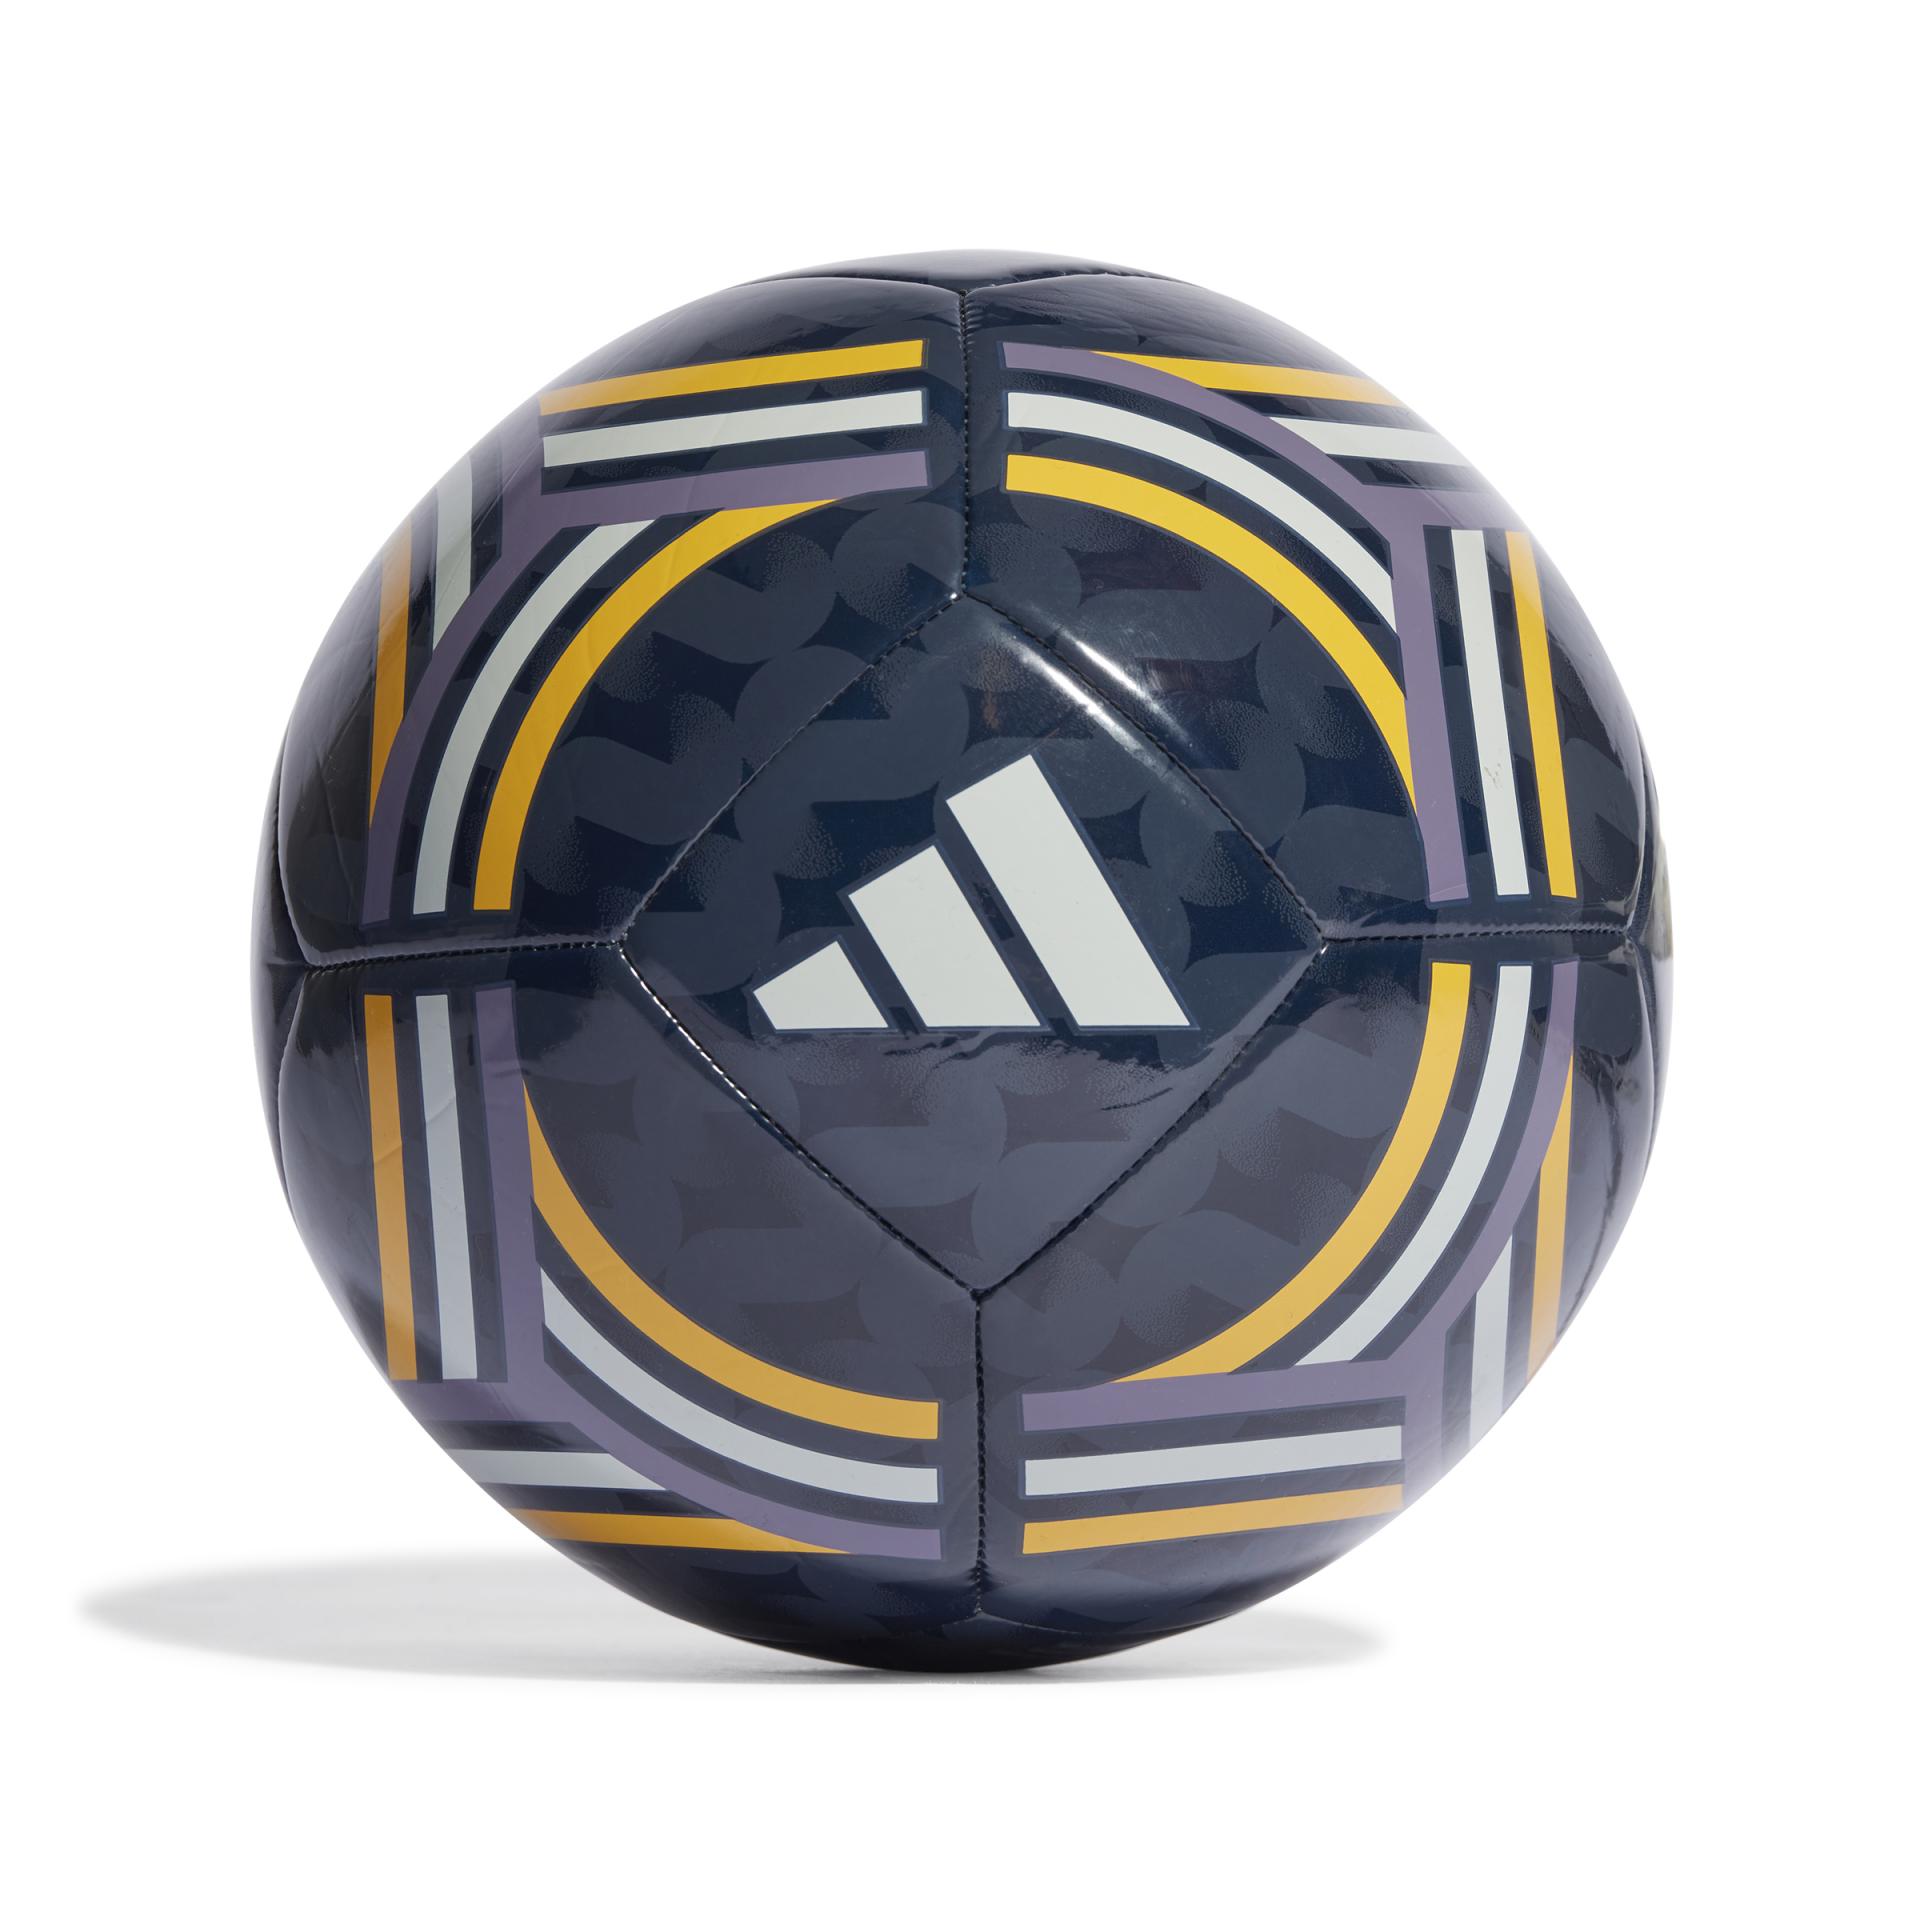 compra balon futbol de Real Madrid talla 5, en nuestra web